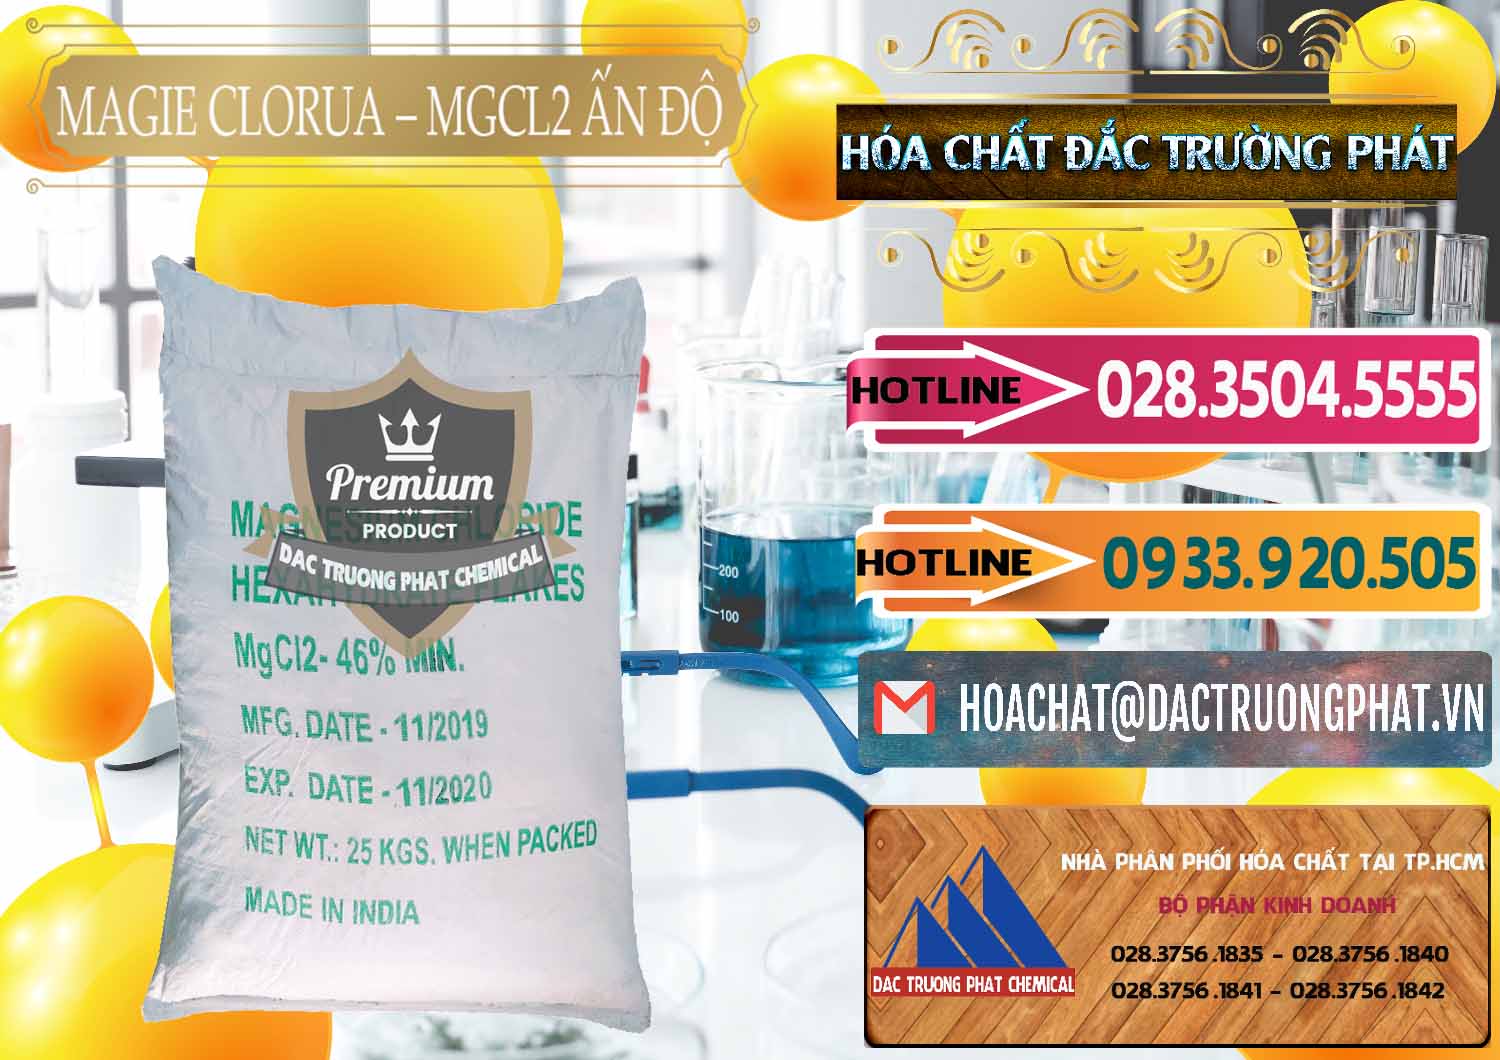 Đơn vị chuyên bán - phân phối Magie Clorua – MGCL2 46% Dạng Vảy Ấn Độ India - 0092 - Phân phối _ kinh doanh hóa chất tại TP.HCM - dactruongphat.vn